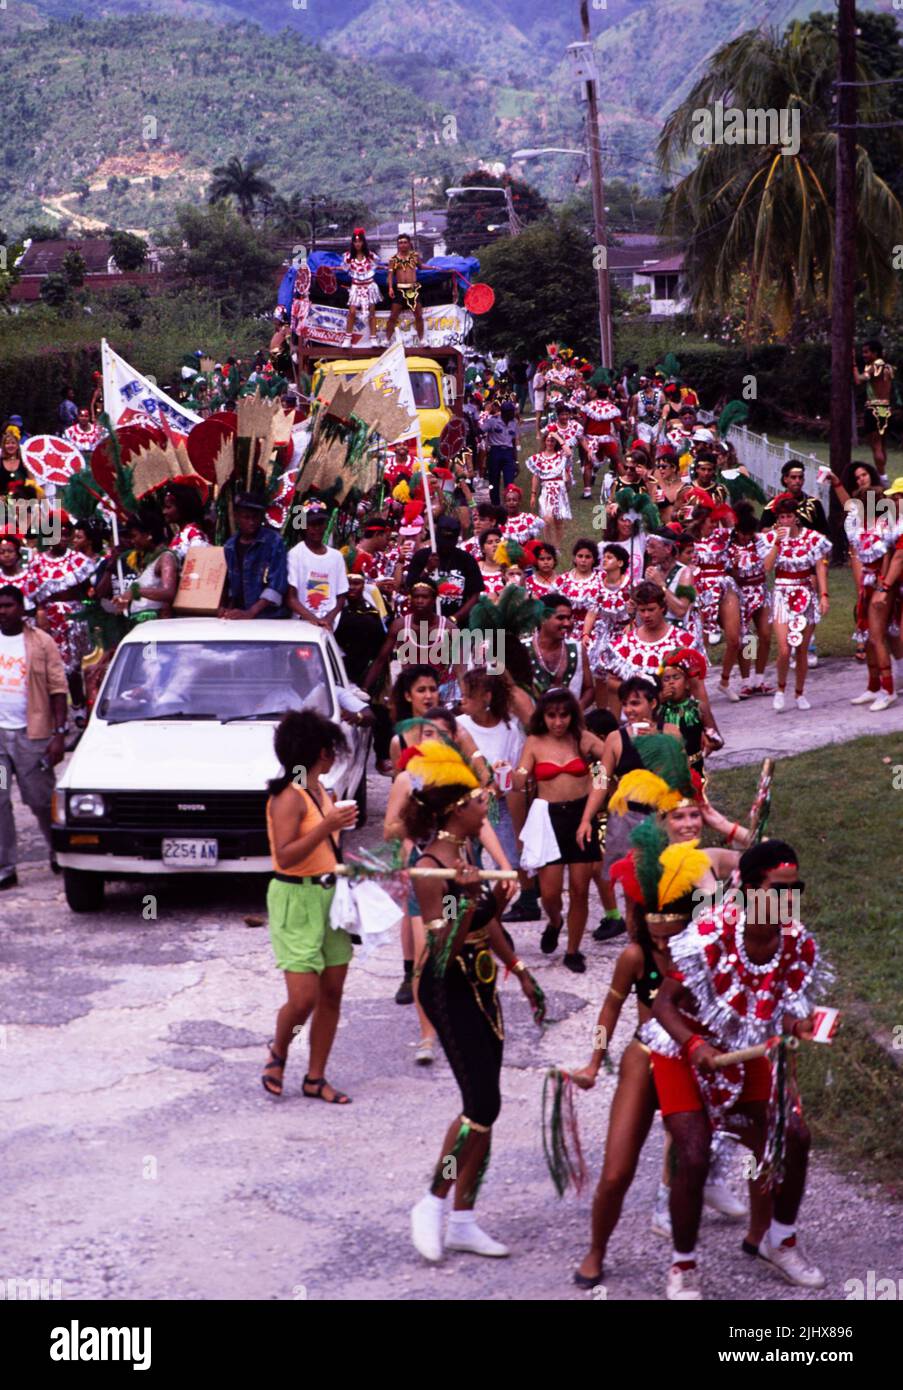 Gente en procesión bailando en las calles en el carnaval de Pascua, Kingston, Jamaica, West Indies en 1990 Foto de stock